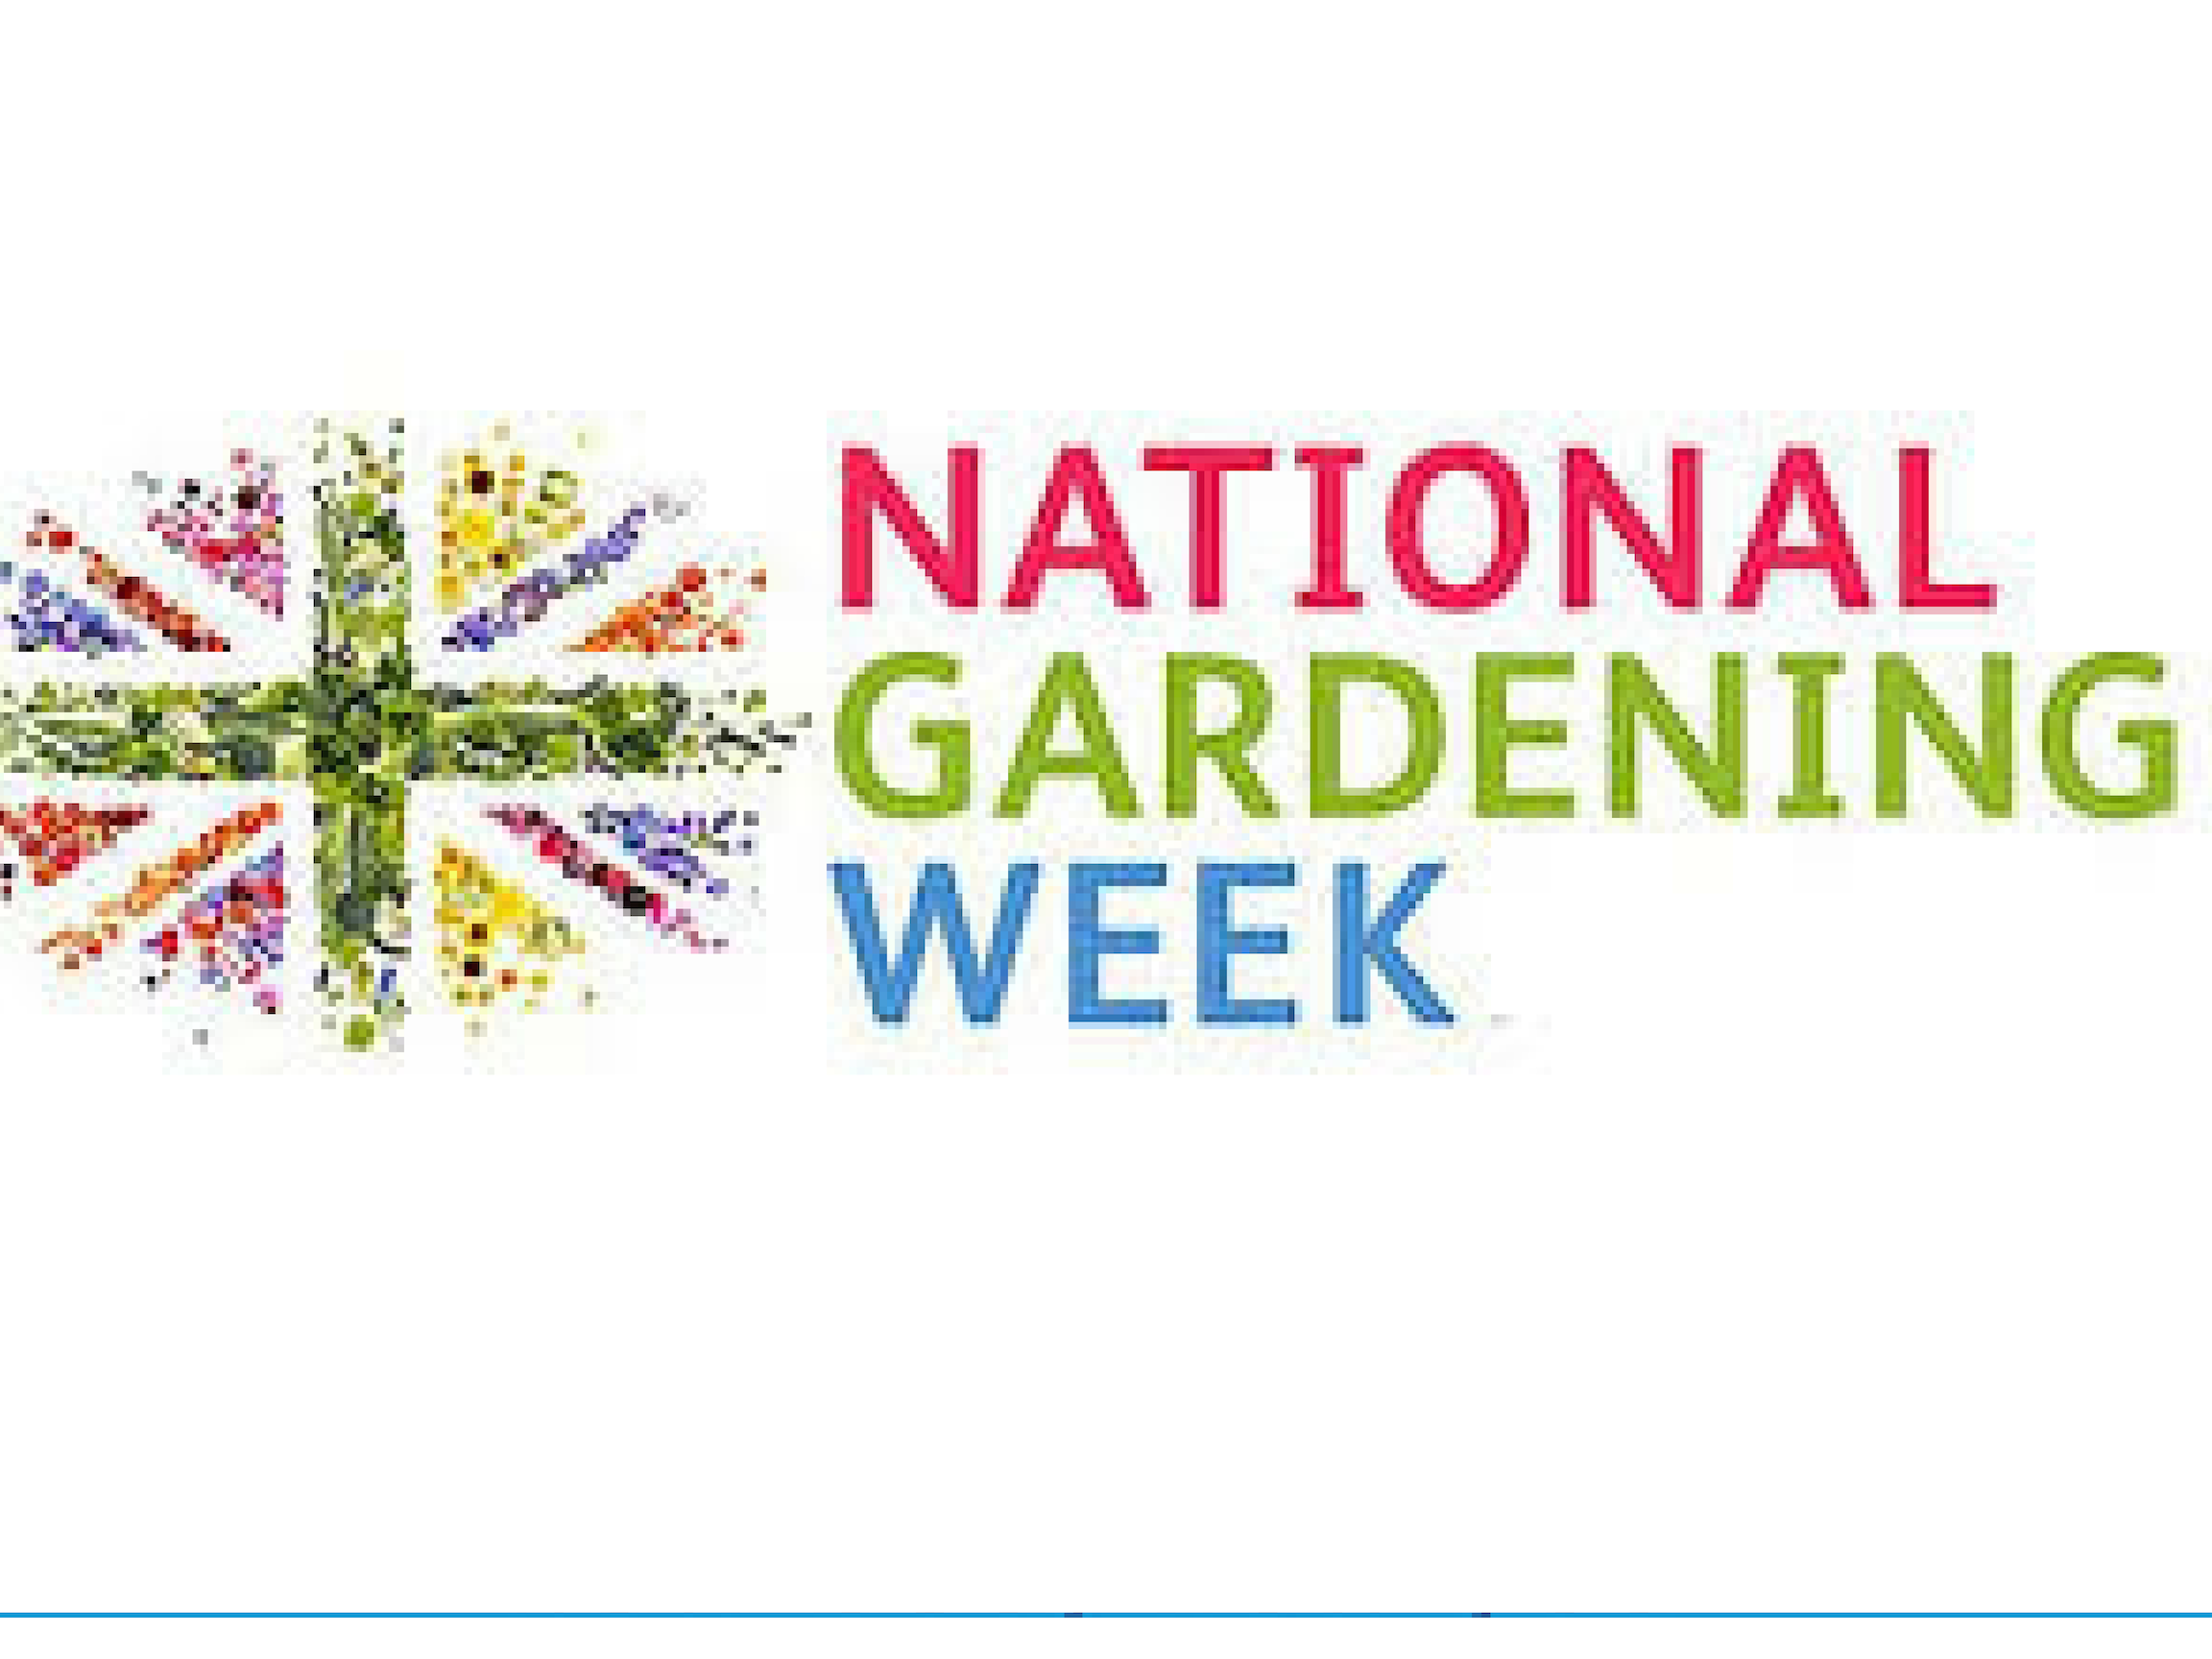 National Gardening Week Begins on Monday April 29th,